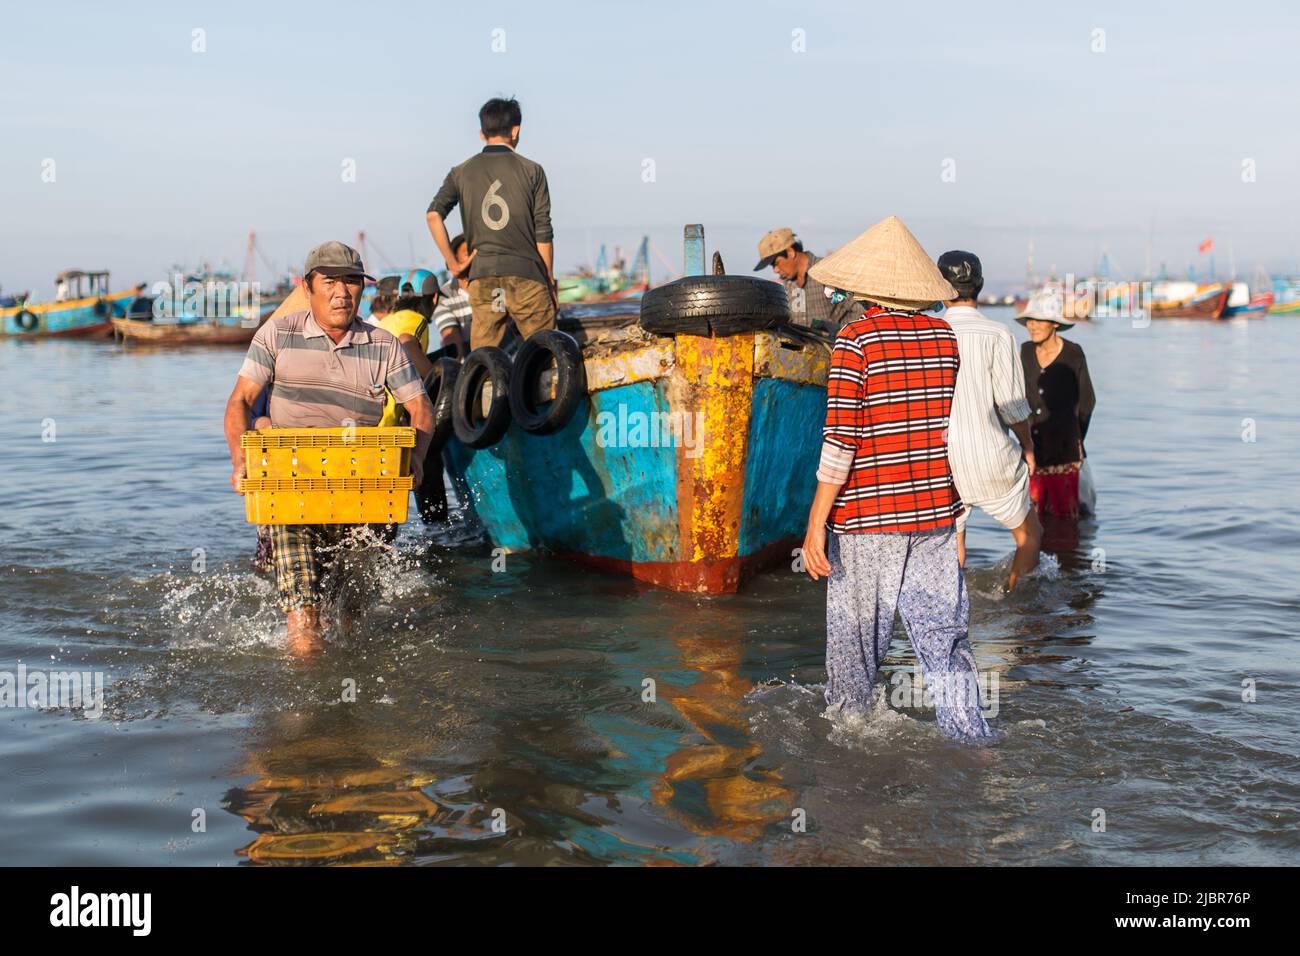 MUI NE, VIETNAM - 9. November 2016: Nicht identifizierte Menschen entladen am Morgen am Strand in Mui Ne am 9. November 2016, Vietnam. Stockfoto